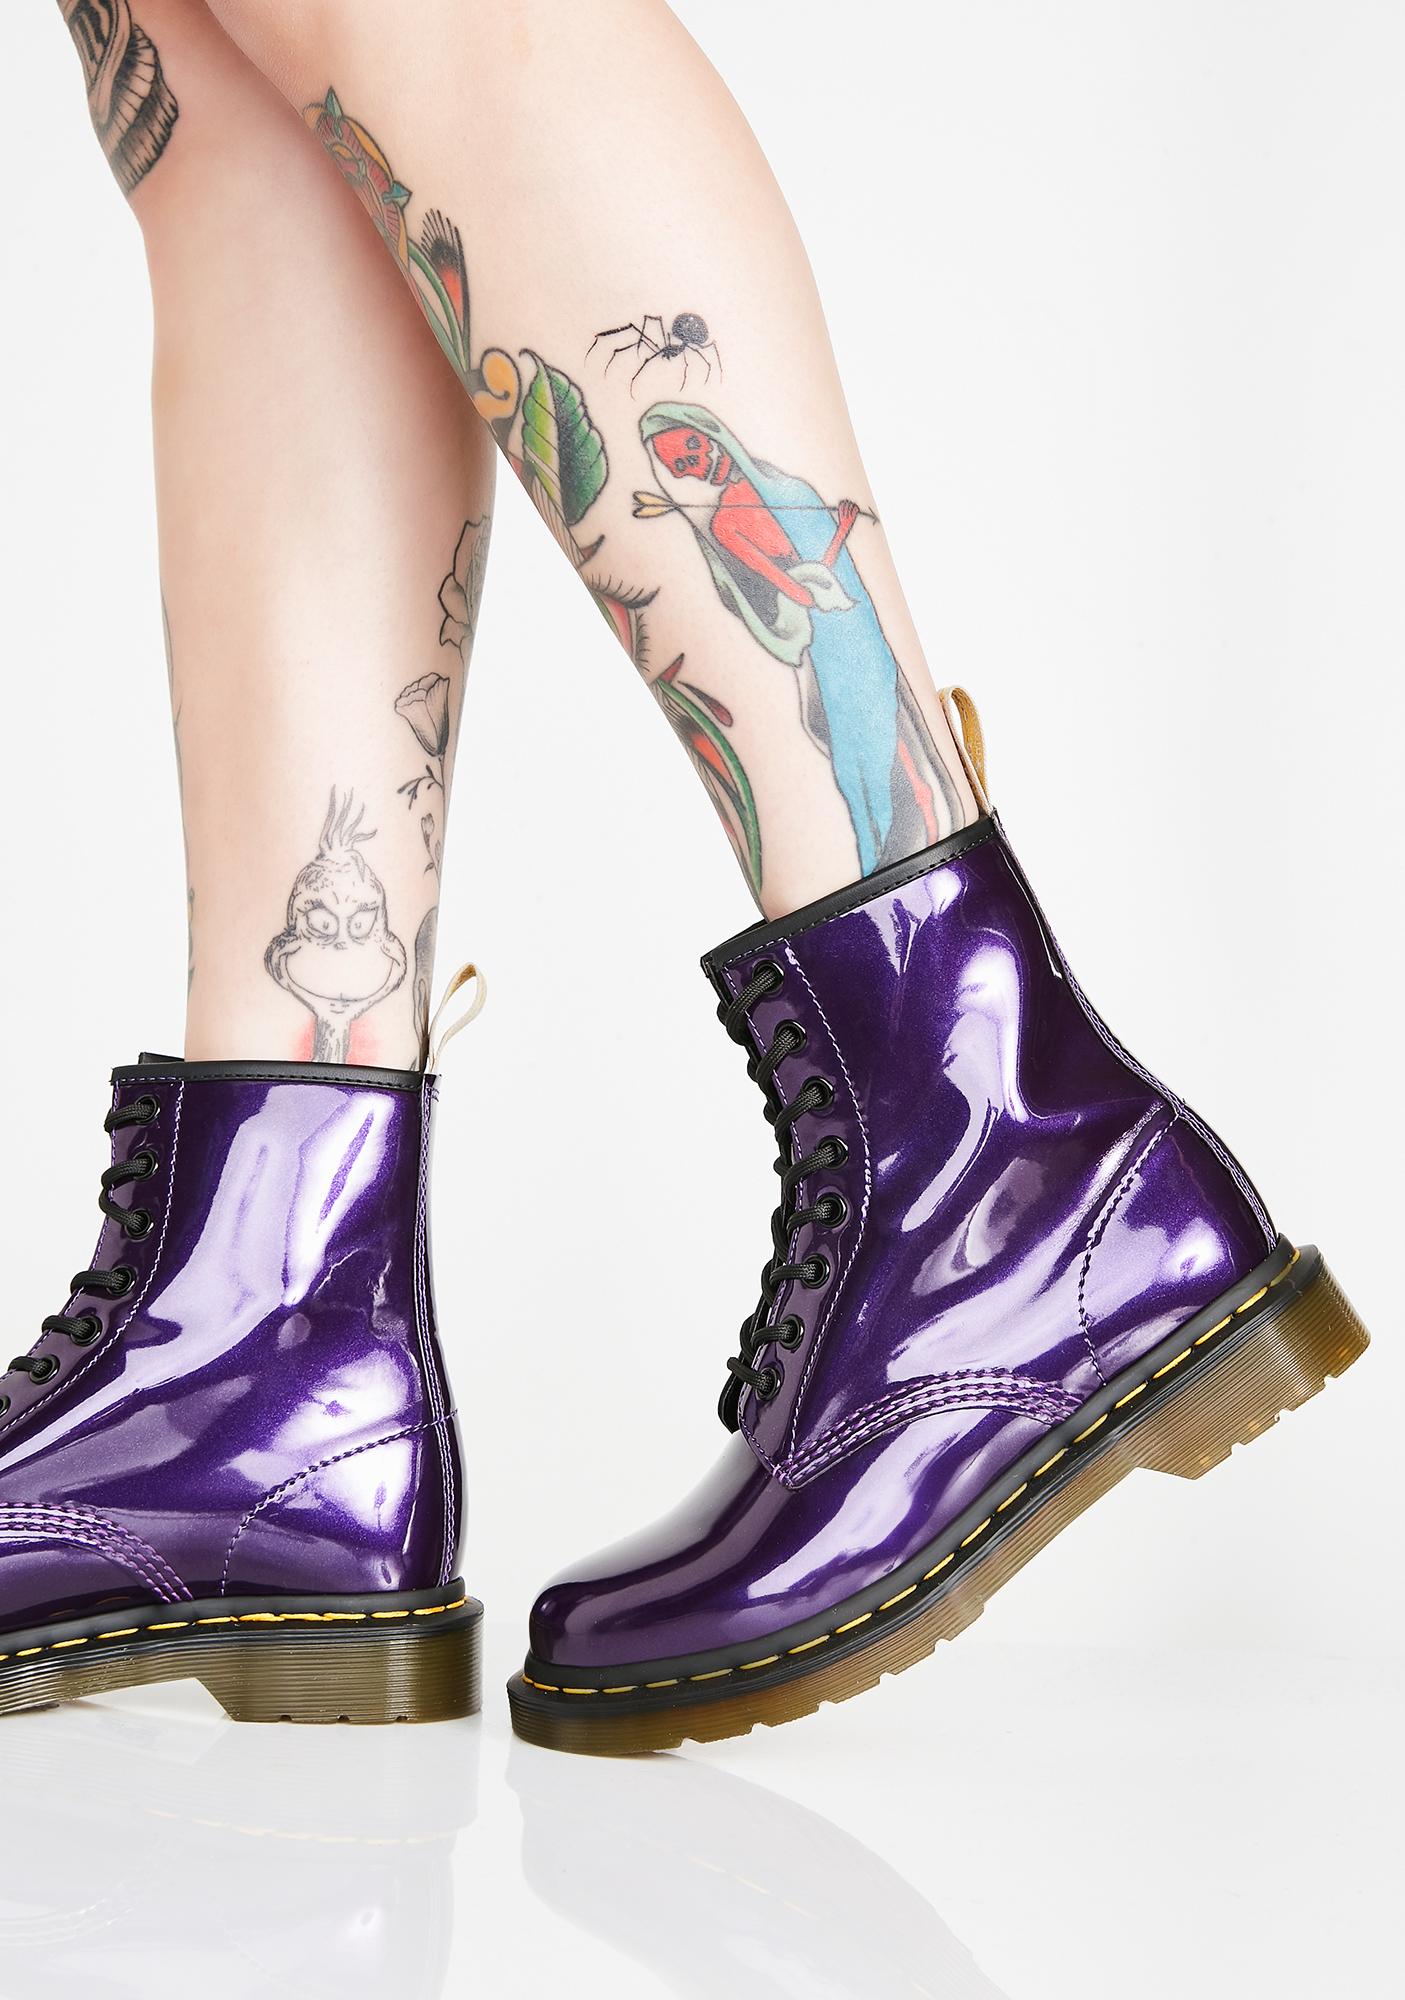 dr martens purple vegan boots